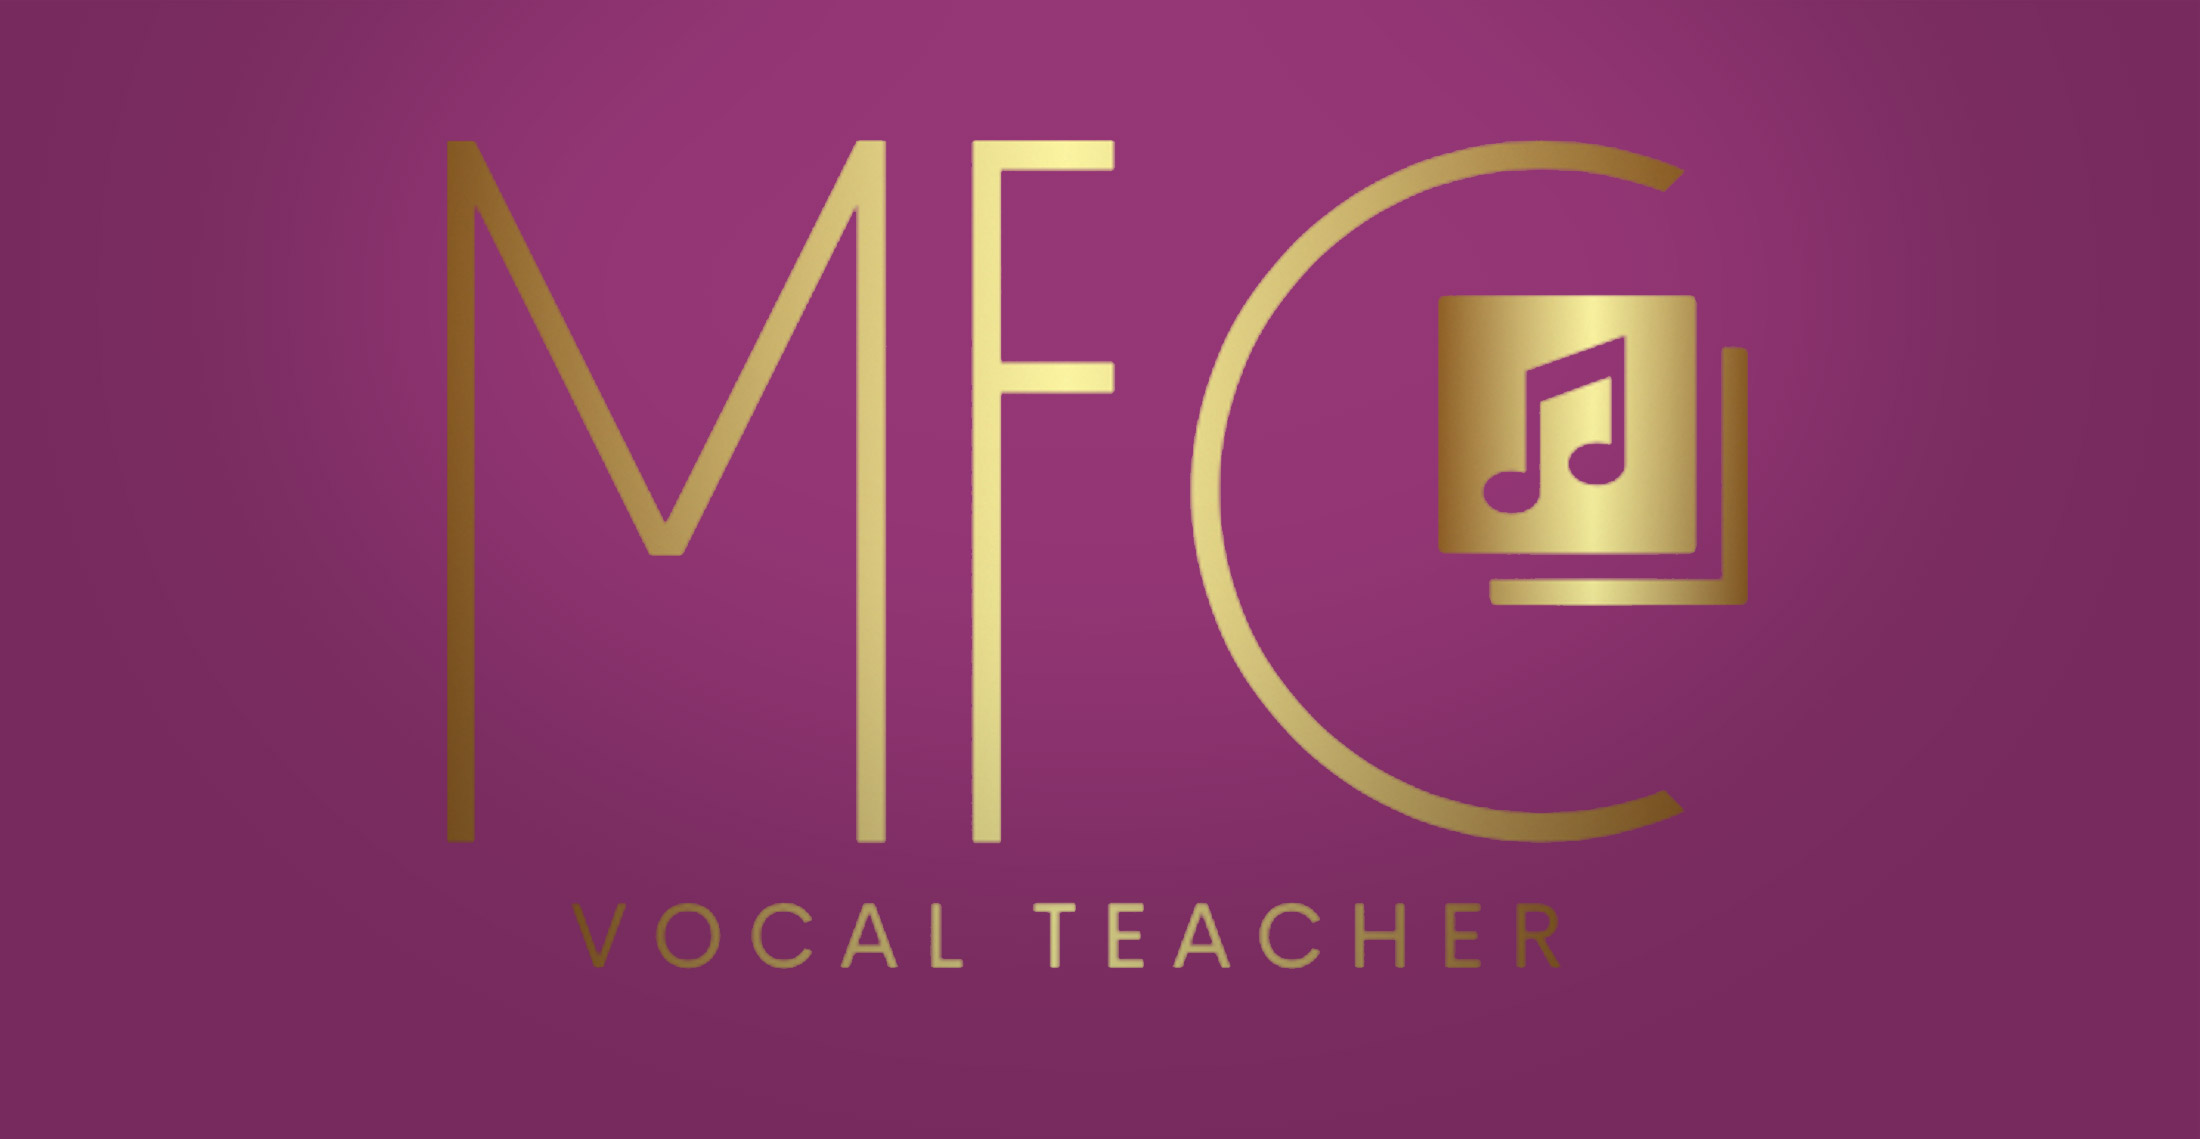 Michelle Francis Cook - Vocal Teacher